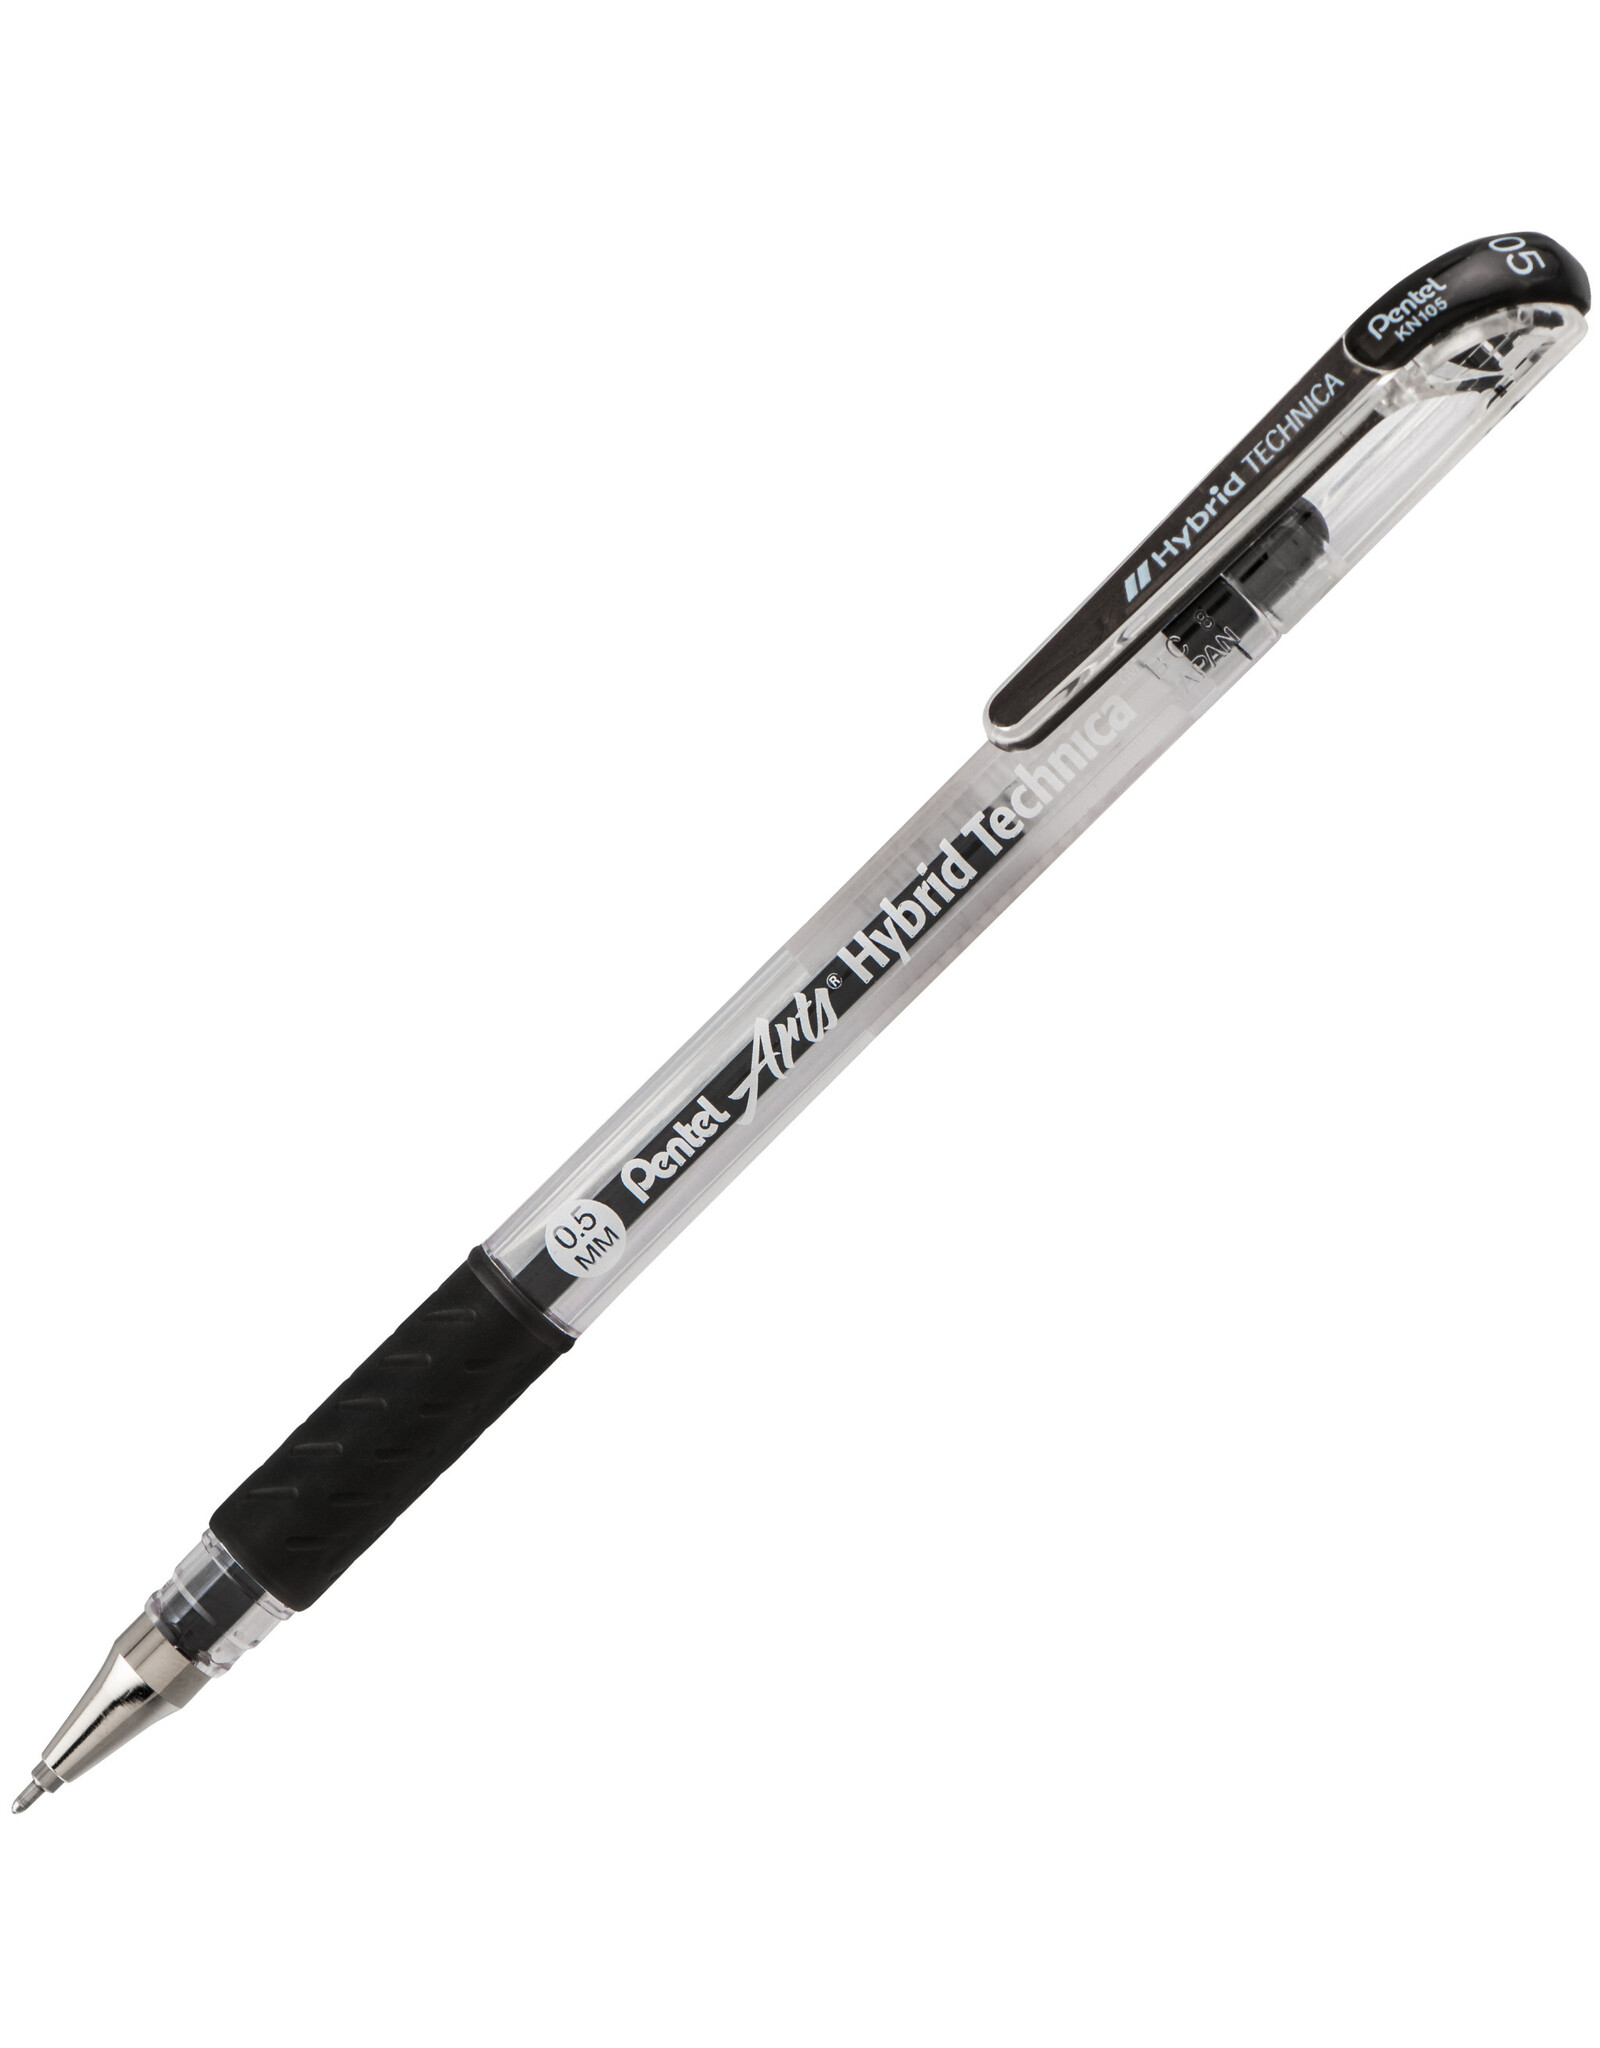 Pentel Pentel Arts Hybrid Technica Gel Pen, Black, 0.5mm